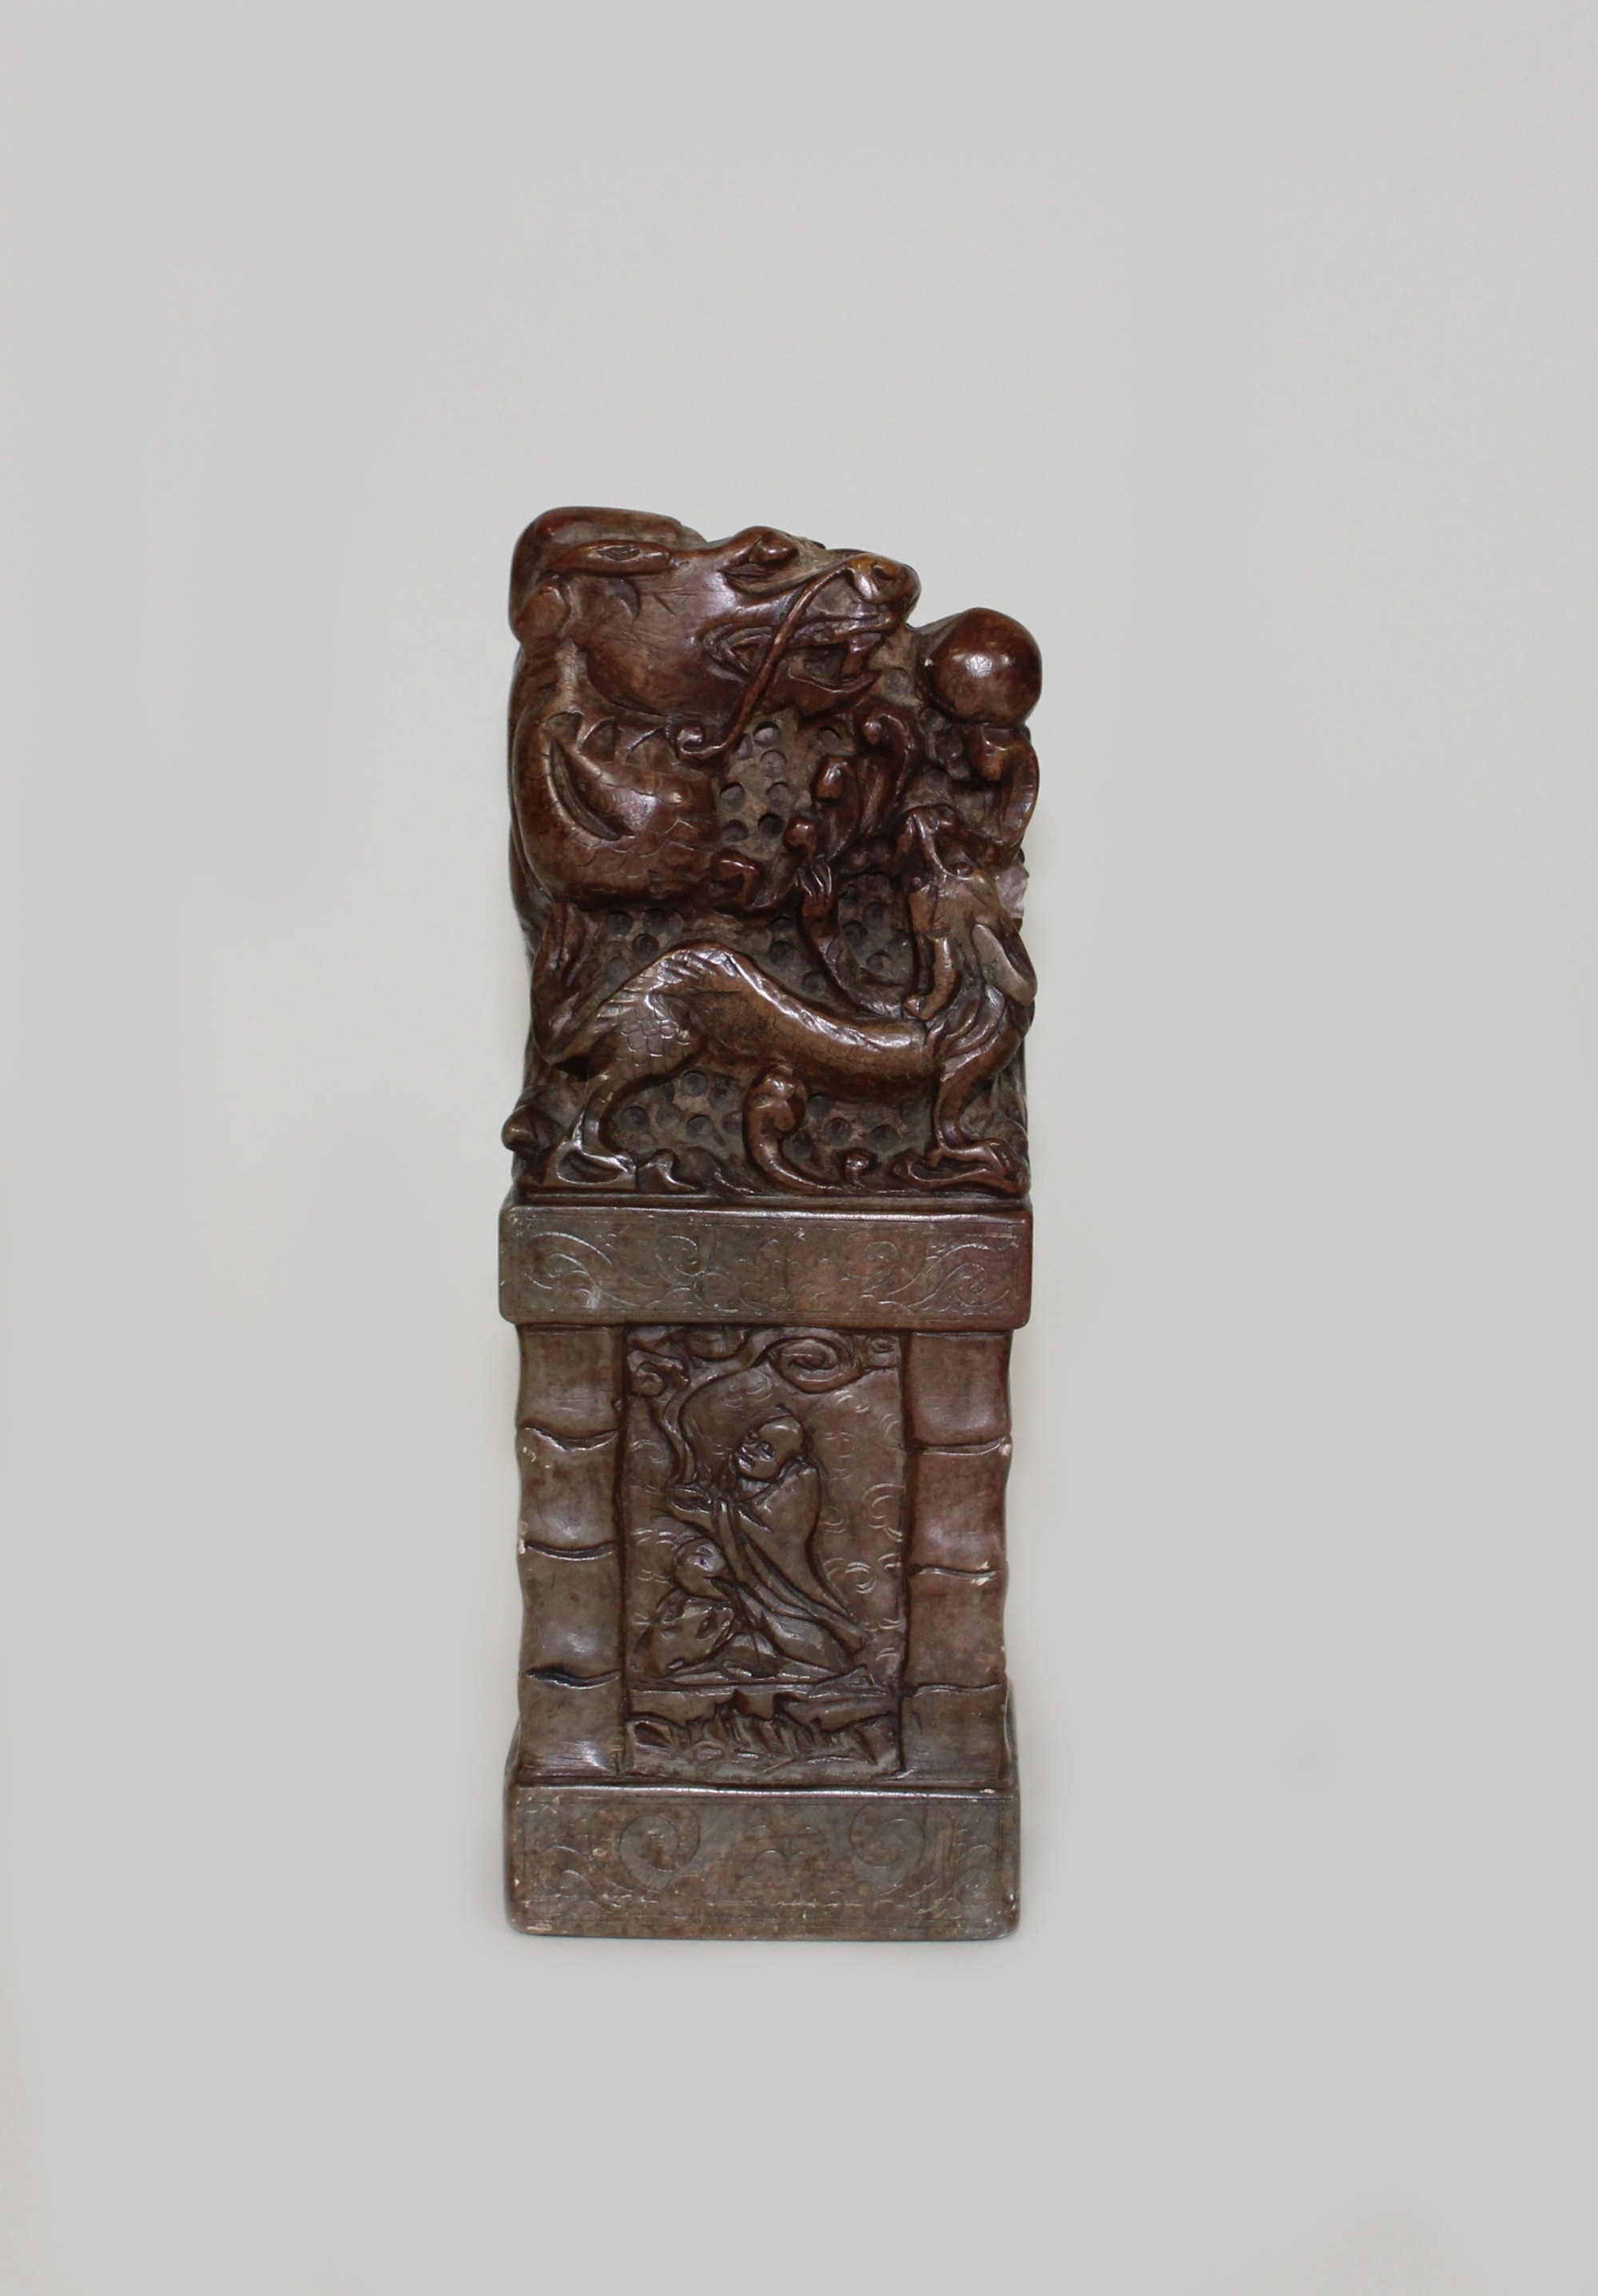 Drachenskulptur mit Reliefsockel, China, Speckstein, H. 20,5 cm, B. 7,5 cm, T. 7 cm